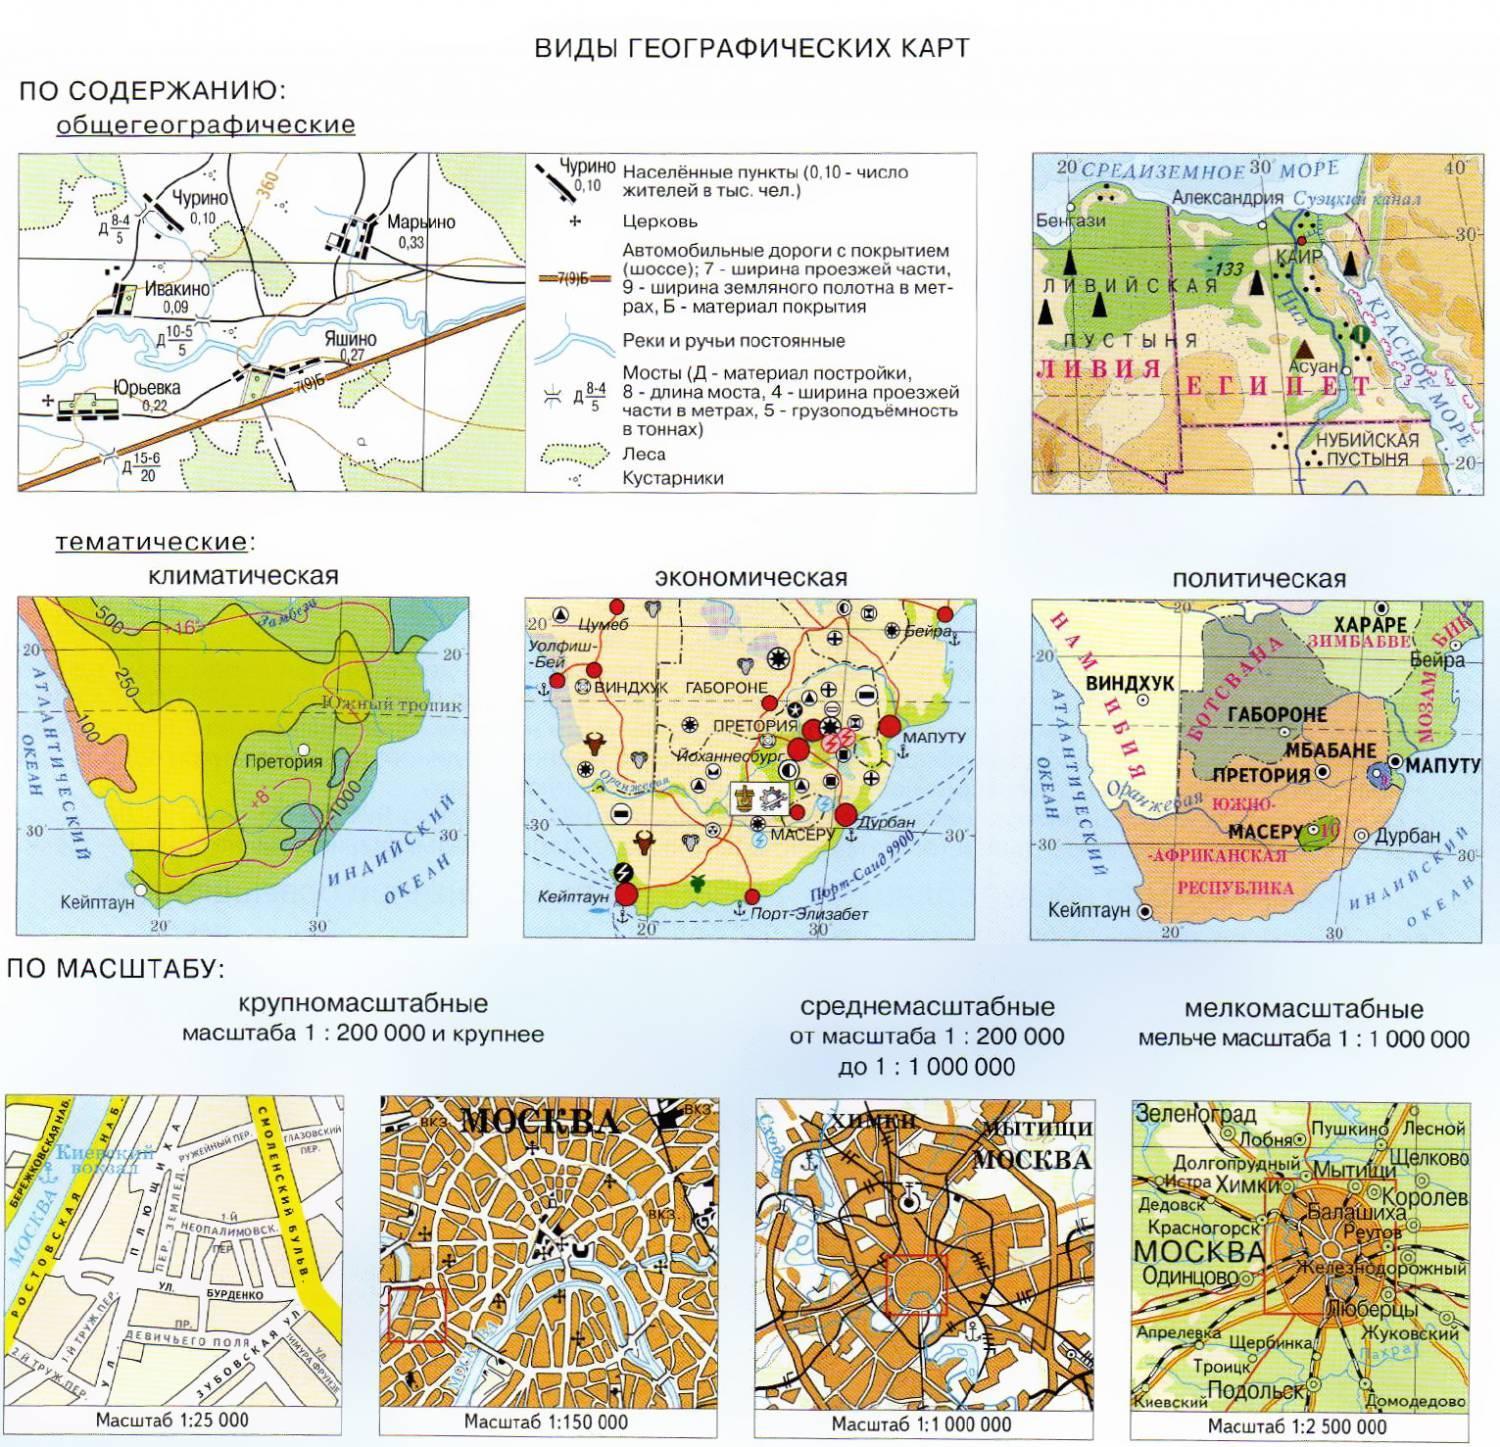 Примером картографического источника географических знаний является альбом фотографий